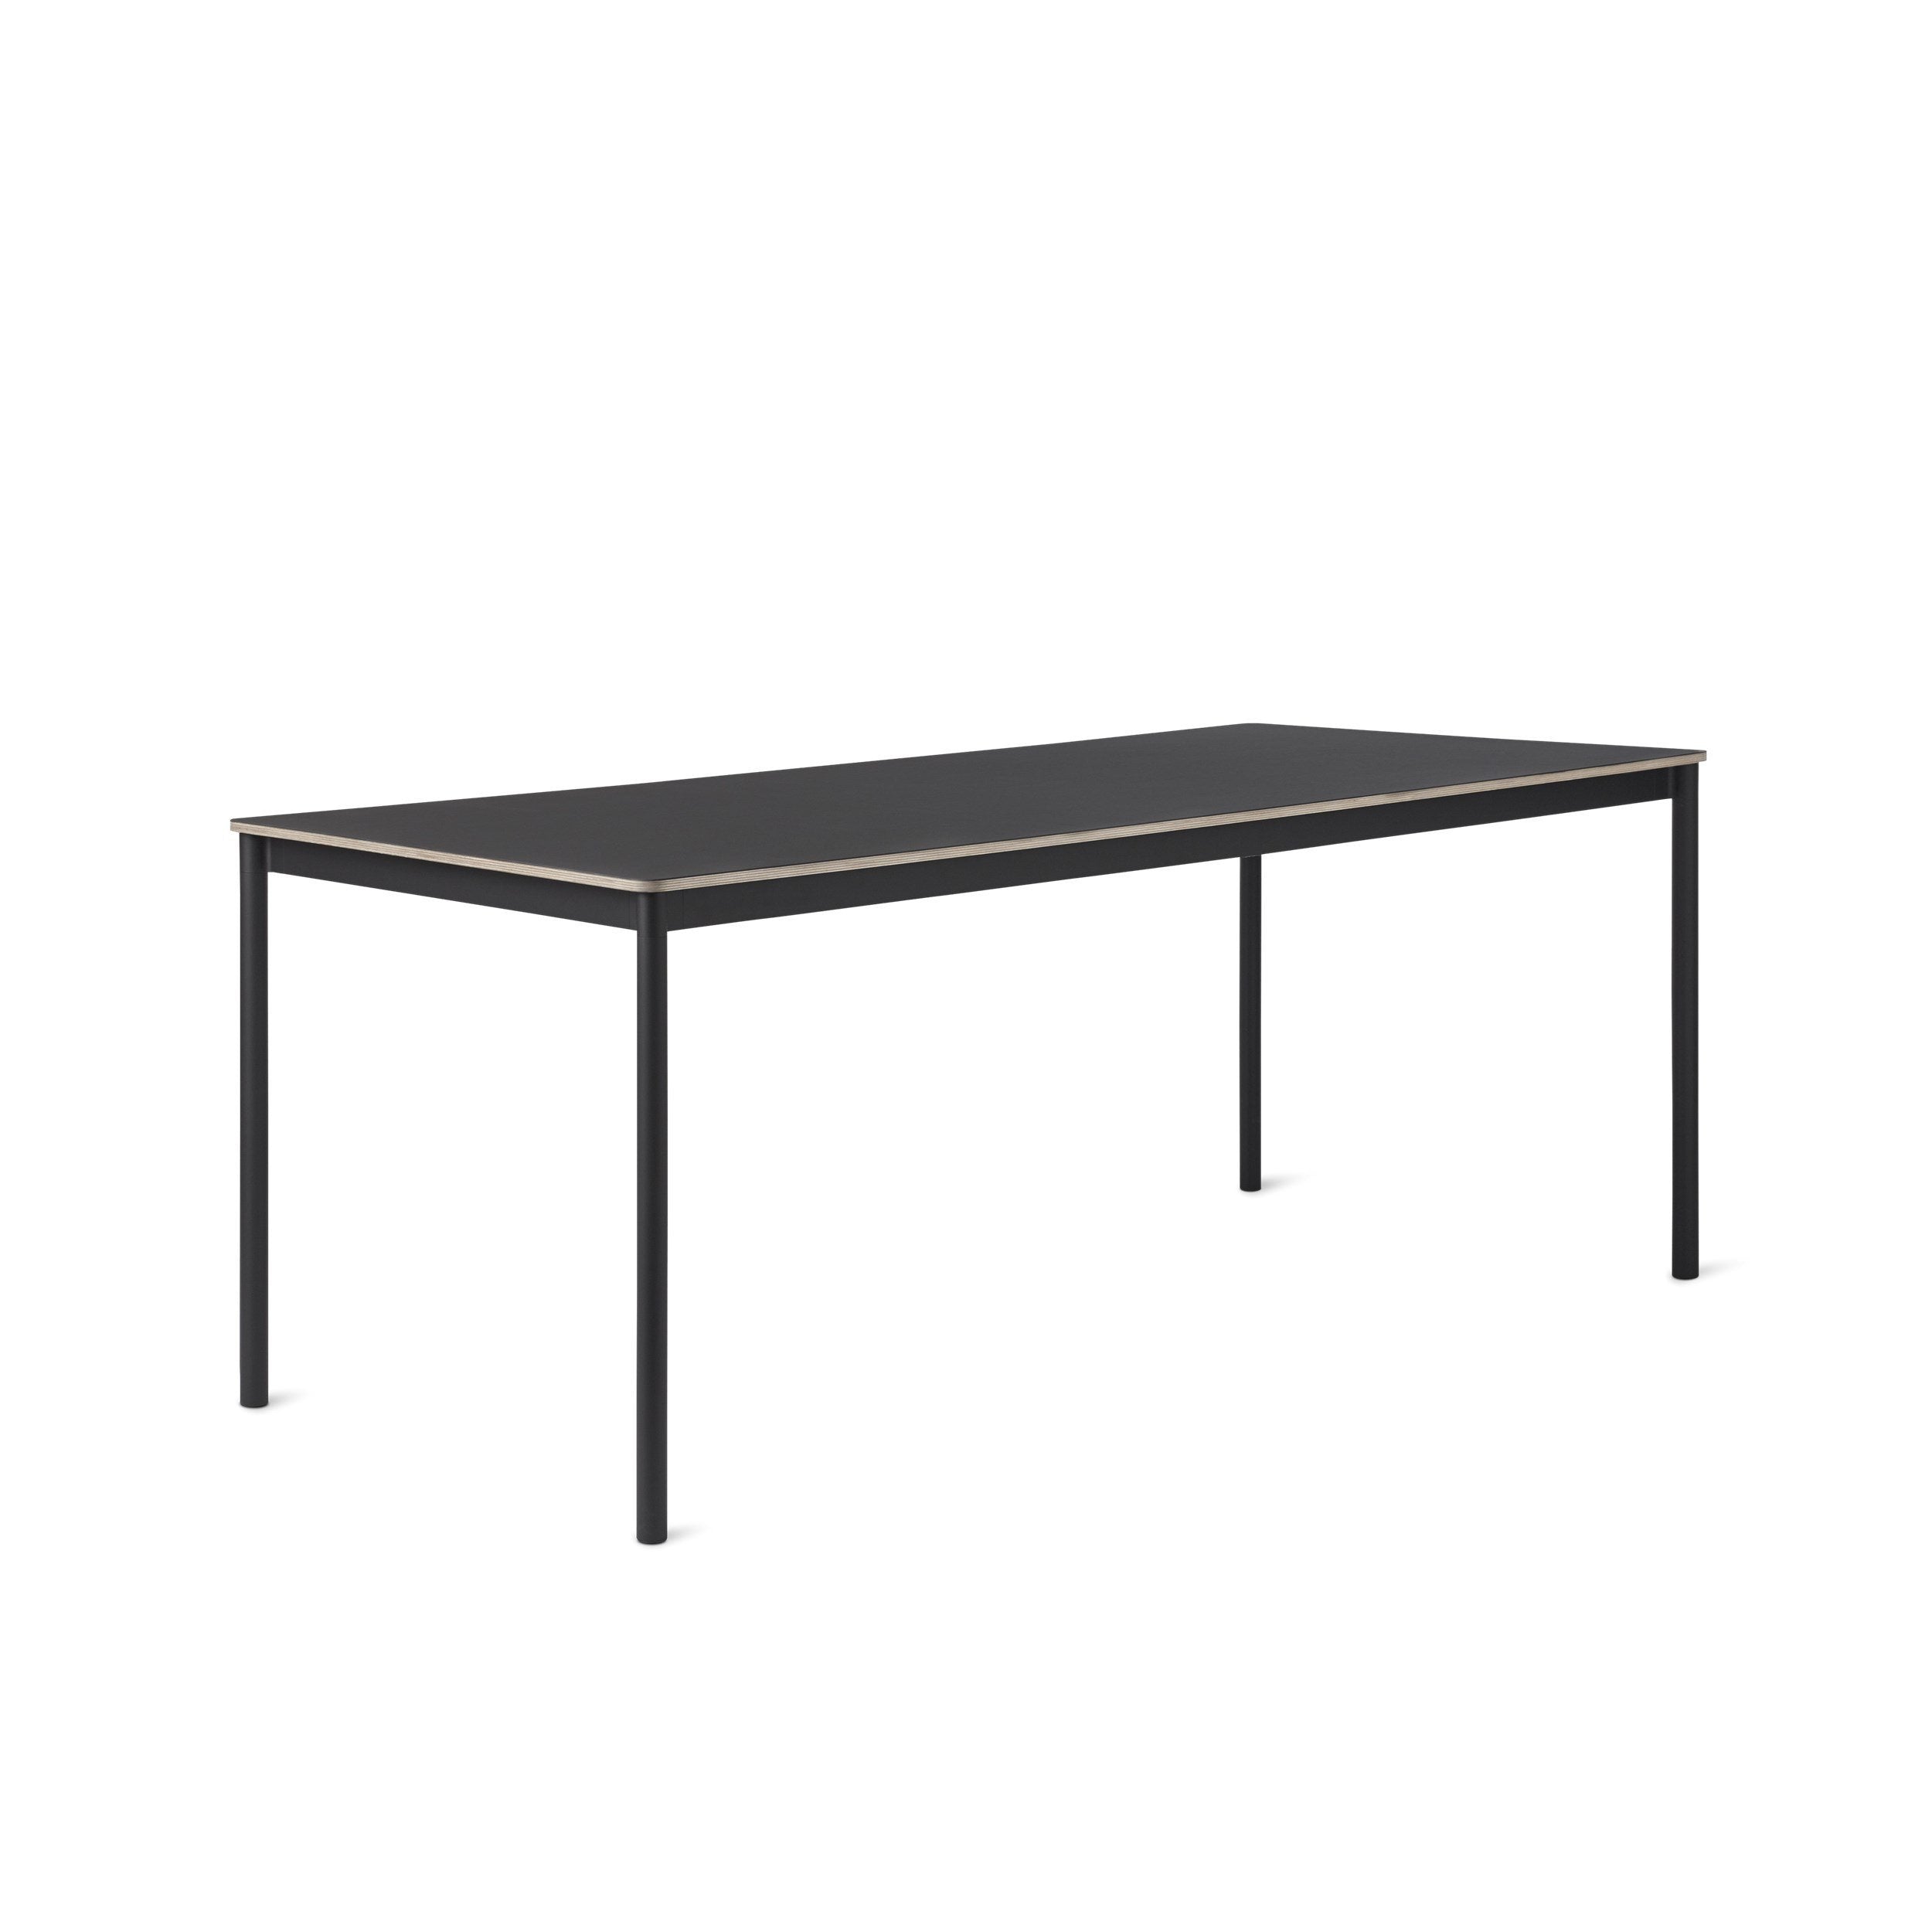 Muuto Pohjapöytä / 250 x 90 cm / 98,4 x 35,4 "musta linoleum / vaneri / musta